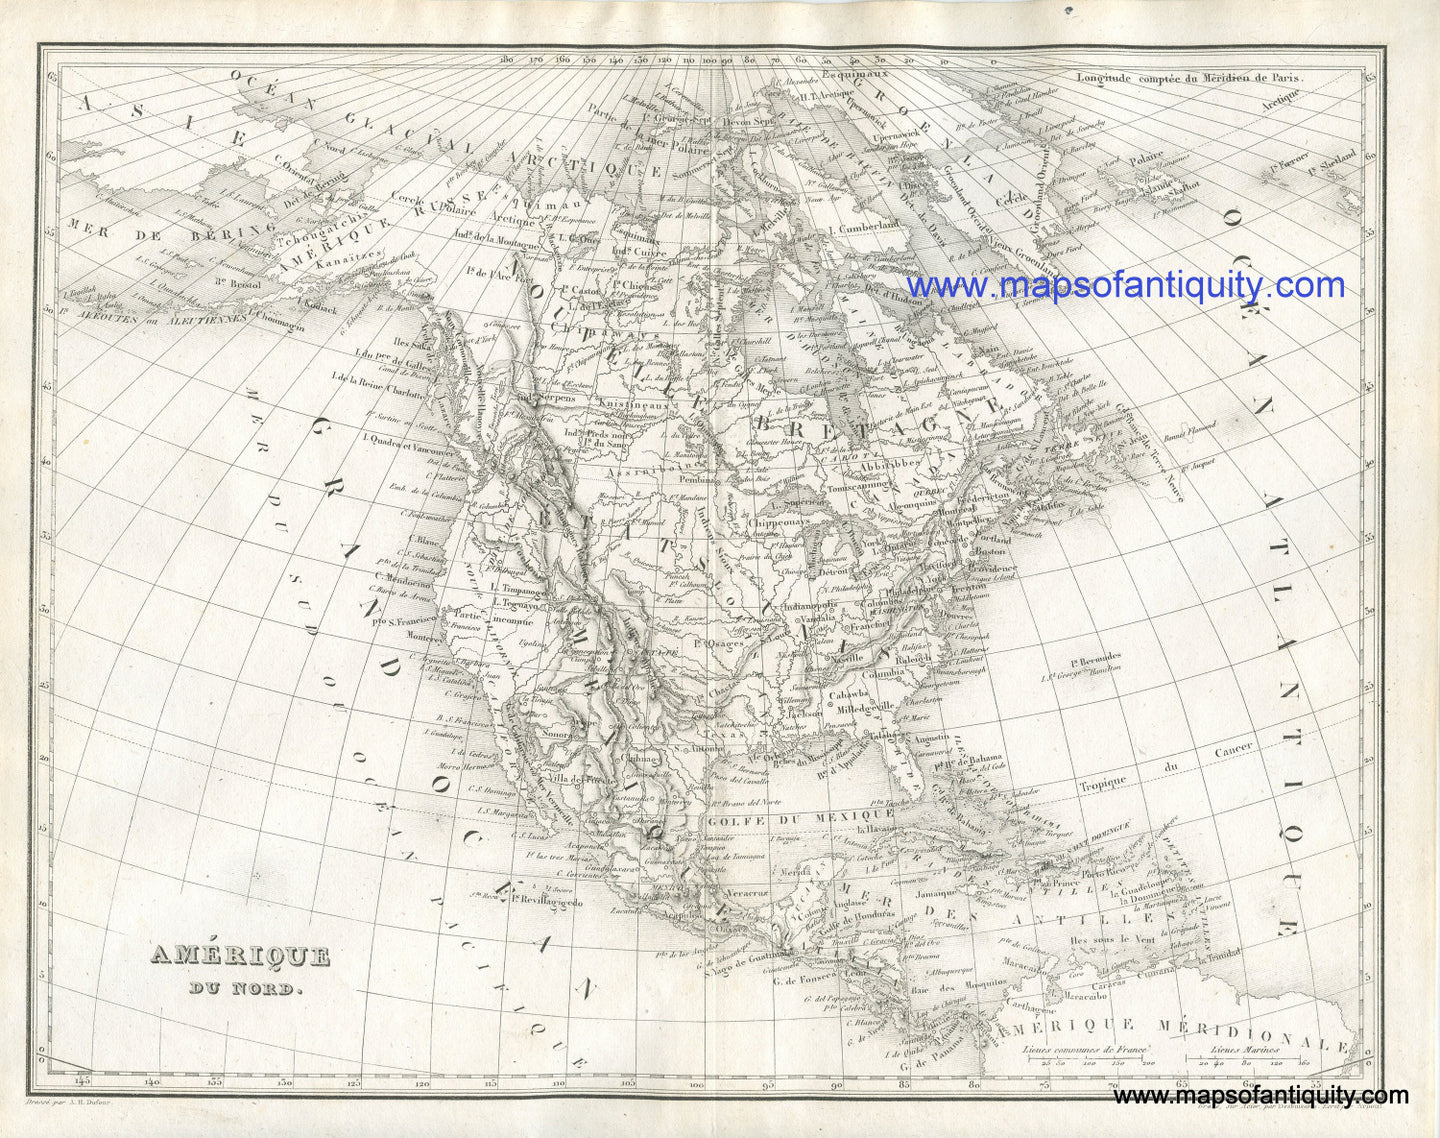 Antique-Black-and-White-Map--Amerique-du-Nord-North-America-North-America--1836-Dufour-Maps-Of-Antiquity